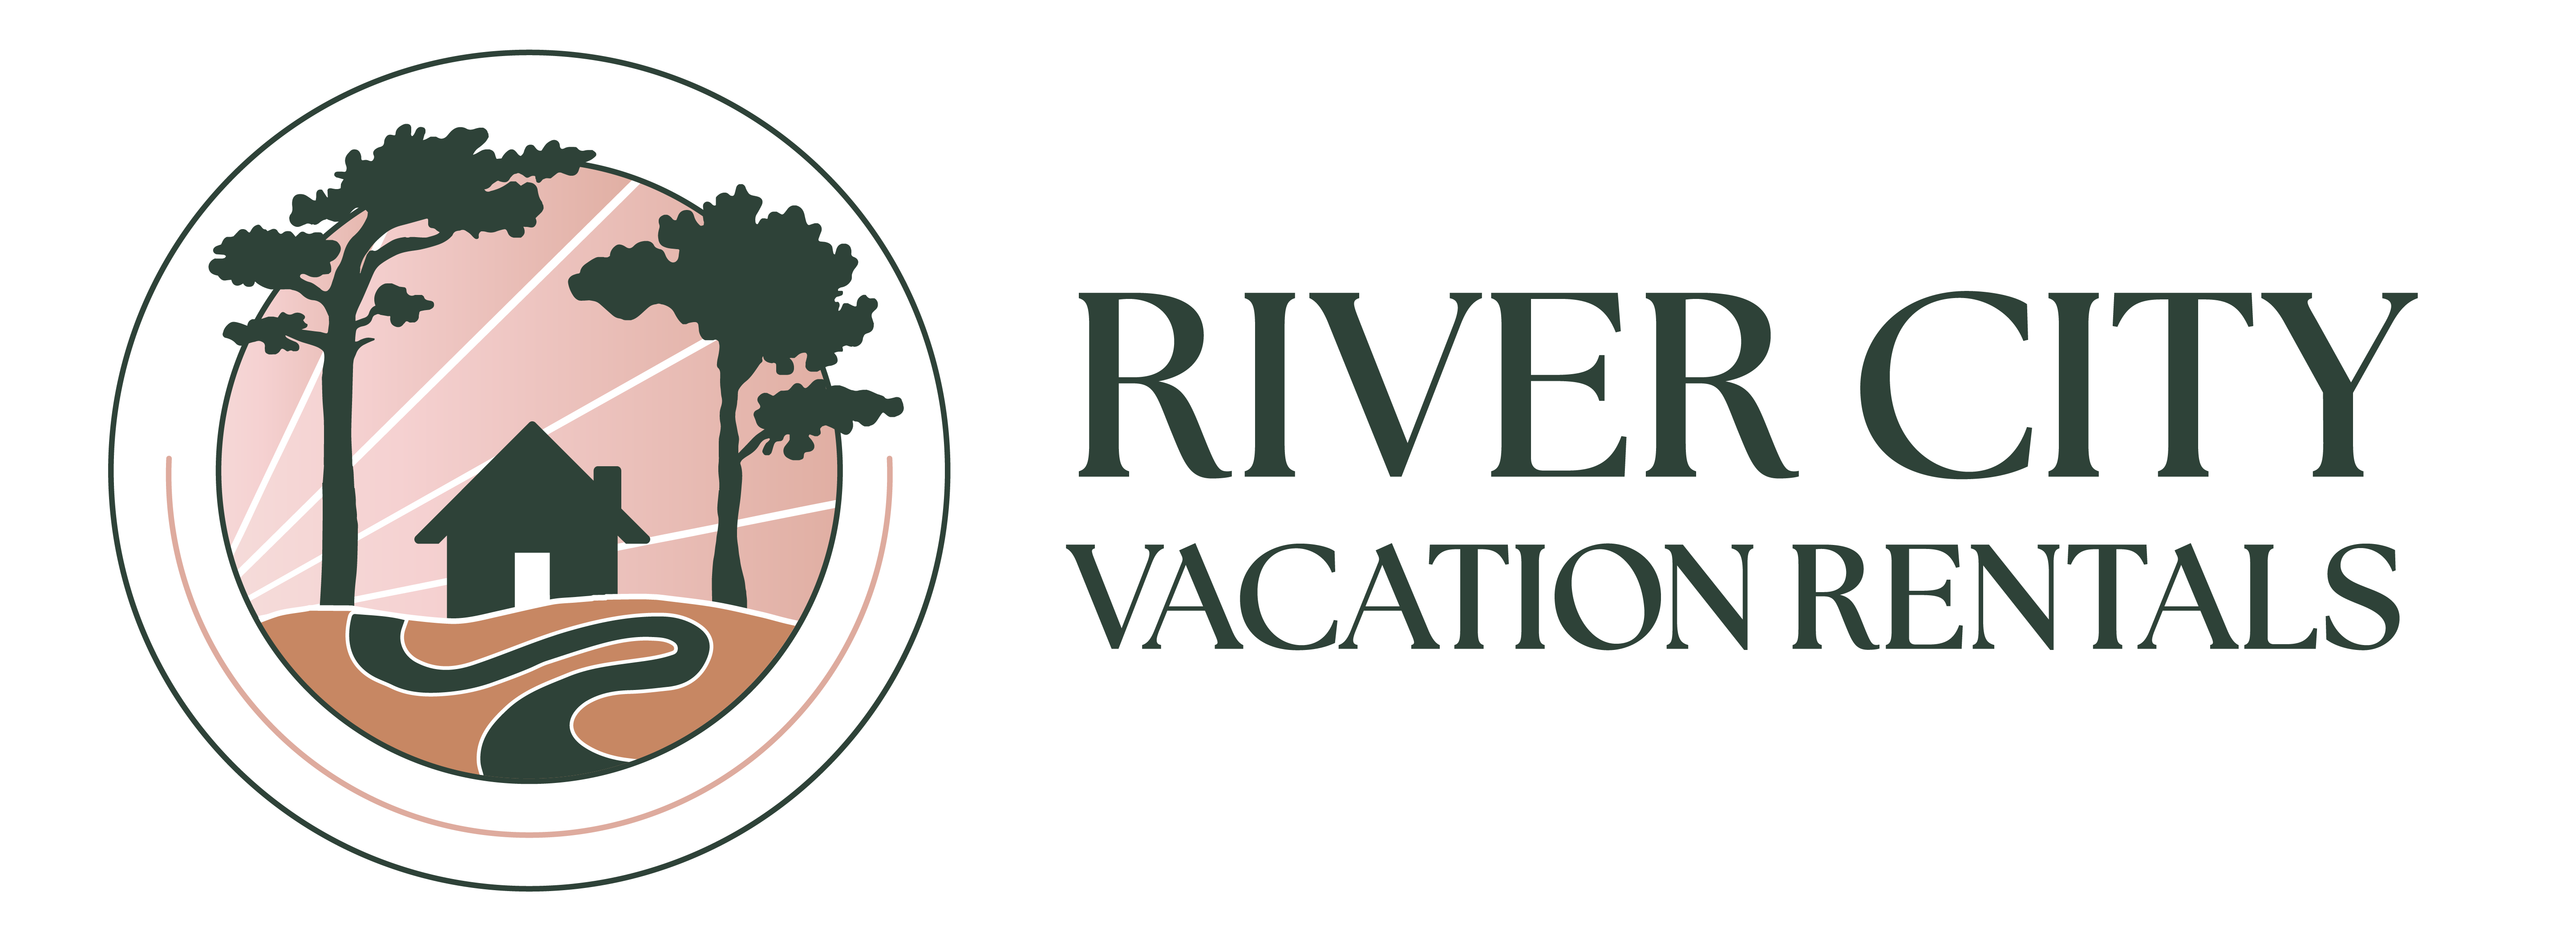 River City Rentals brand logo